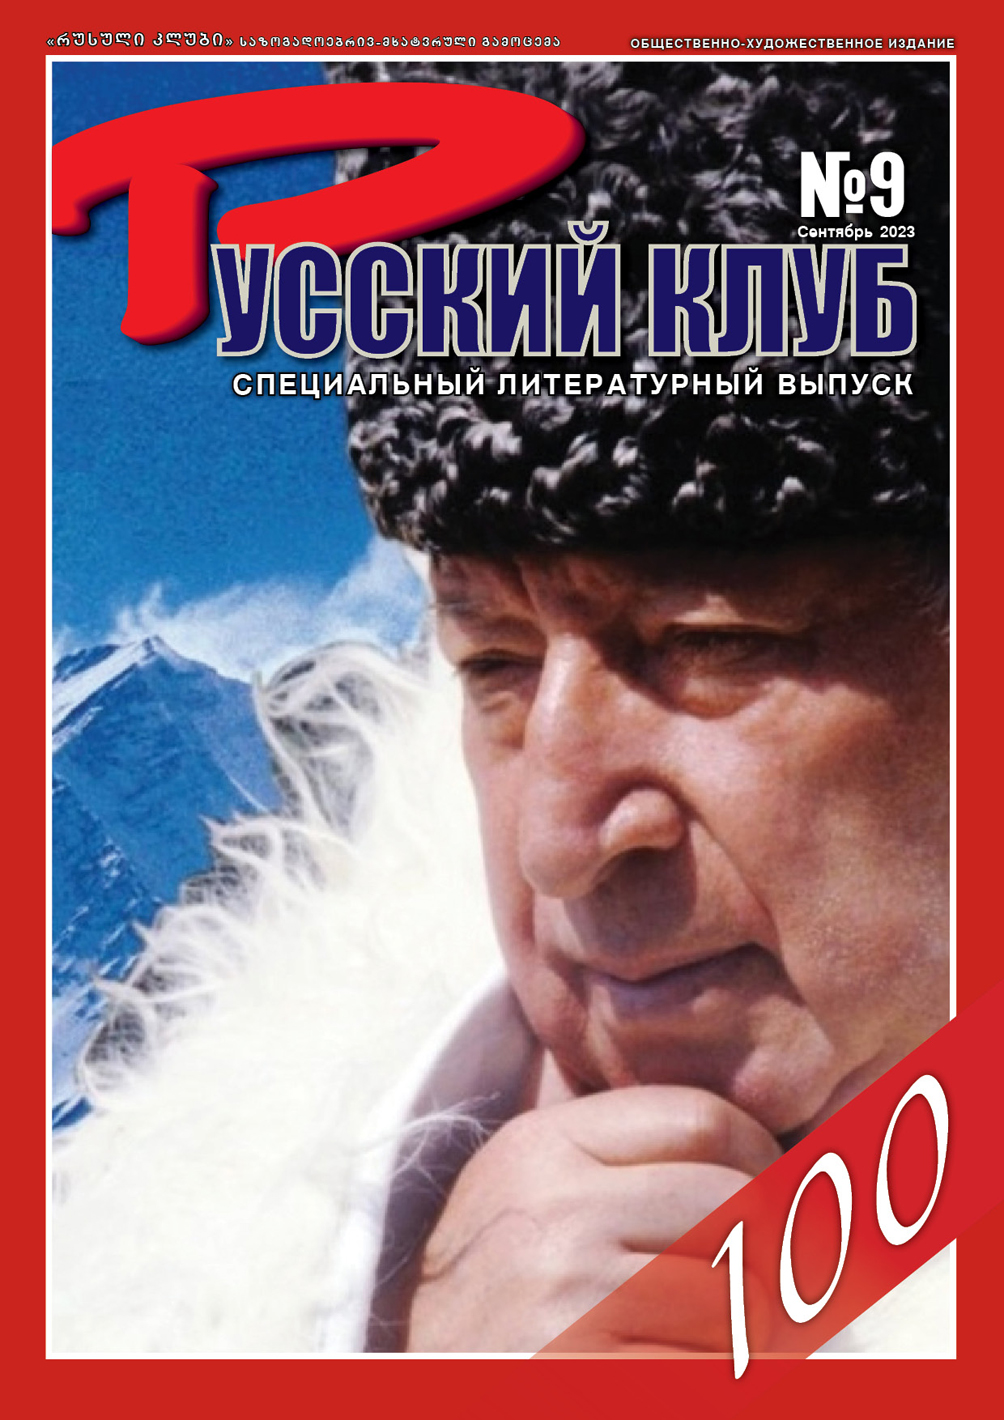 Журнал «Русский клуб», №9, сентябрь 2023 г.: специальный литературный выпуск.